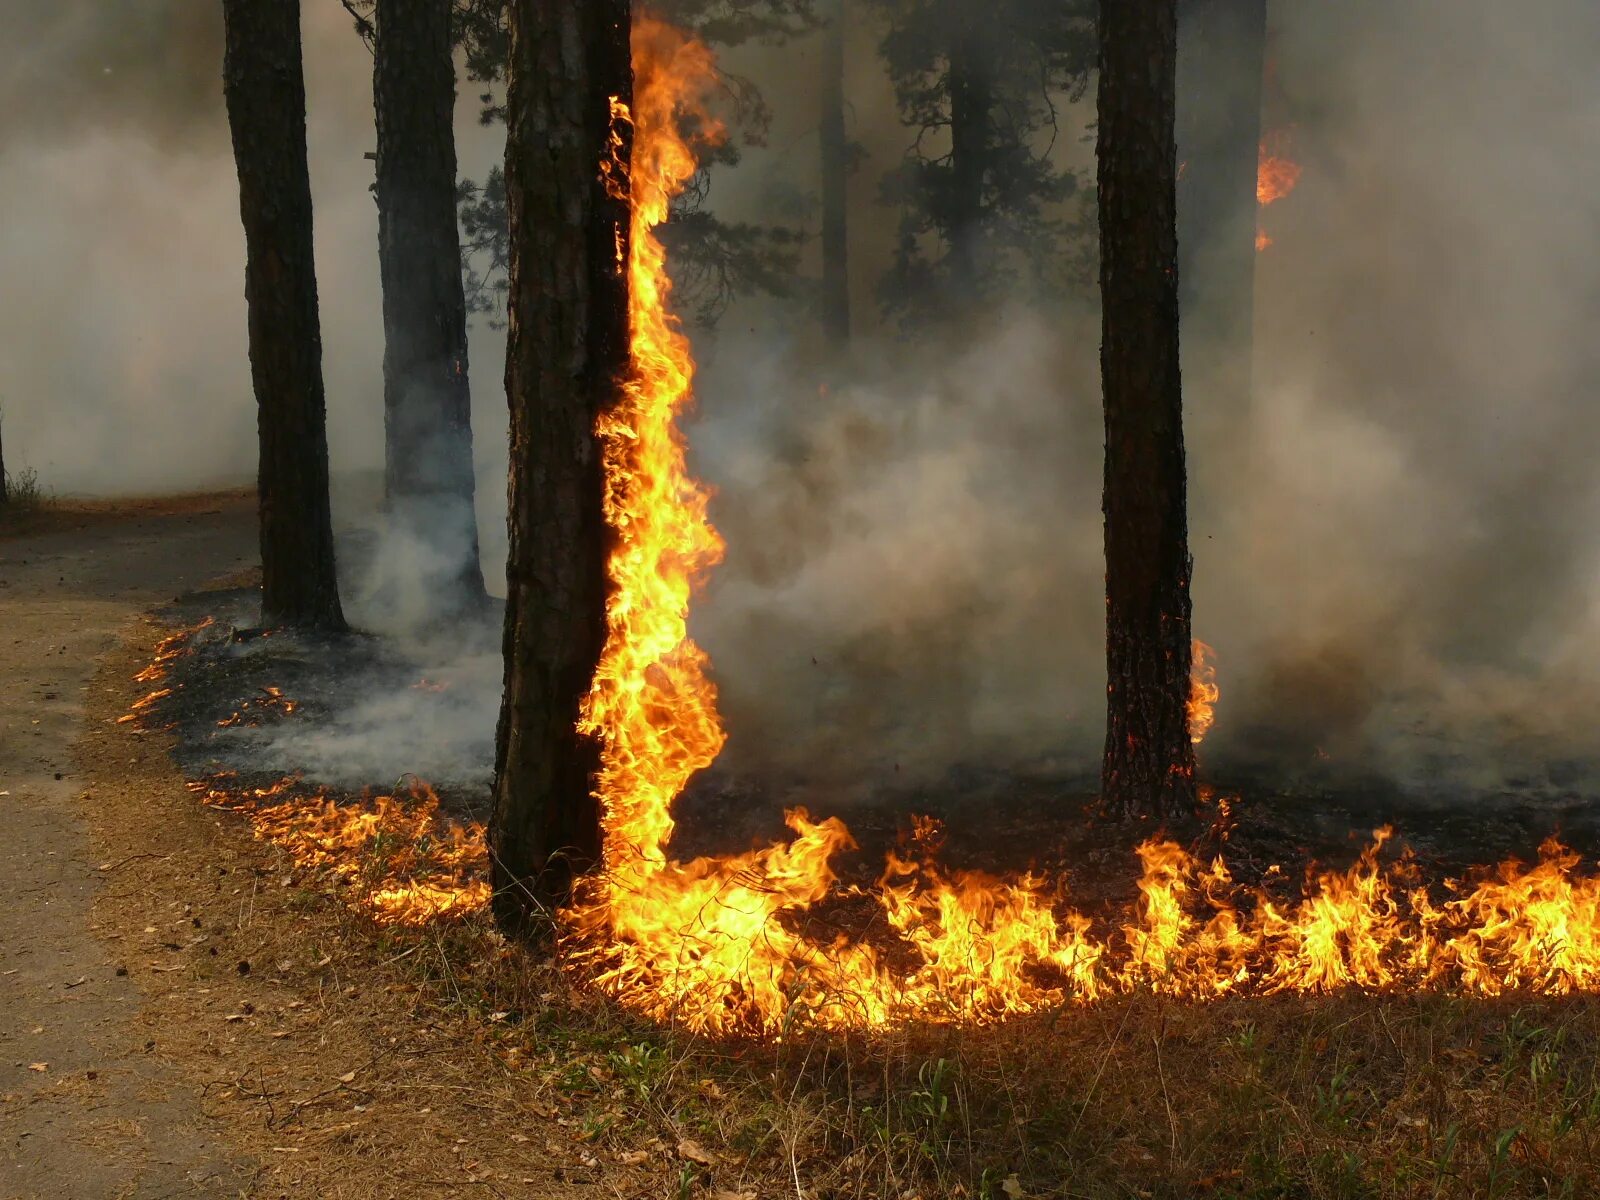 Пожар в лесу. Пожар в Лесном массиве. Пожароопасный лес. Чрезвычайная пожарная опасность. Этом сохраняется на высоком